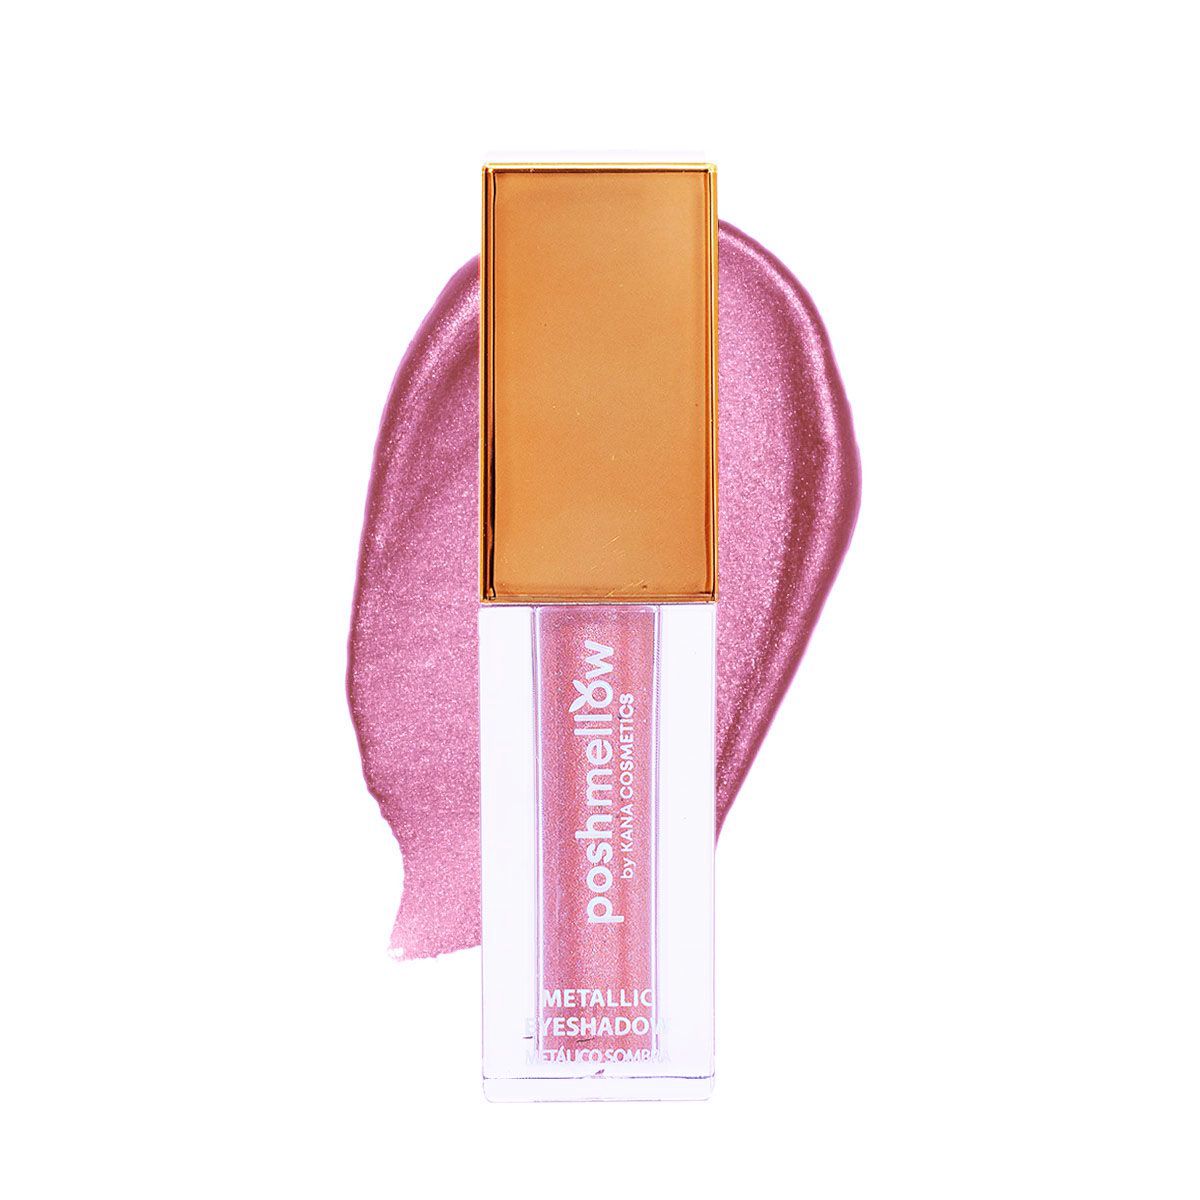 Metallic Eyeshadow Pink Liquid Eyeshadow by Poshmellow